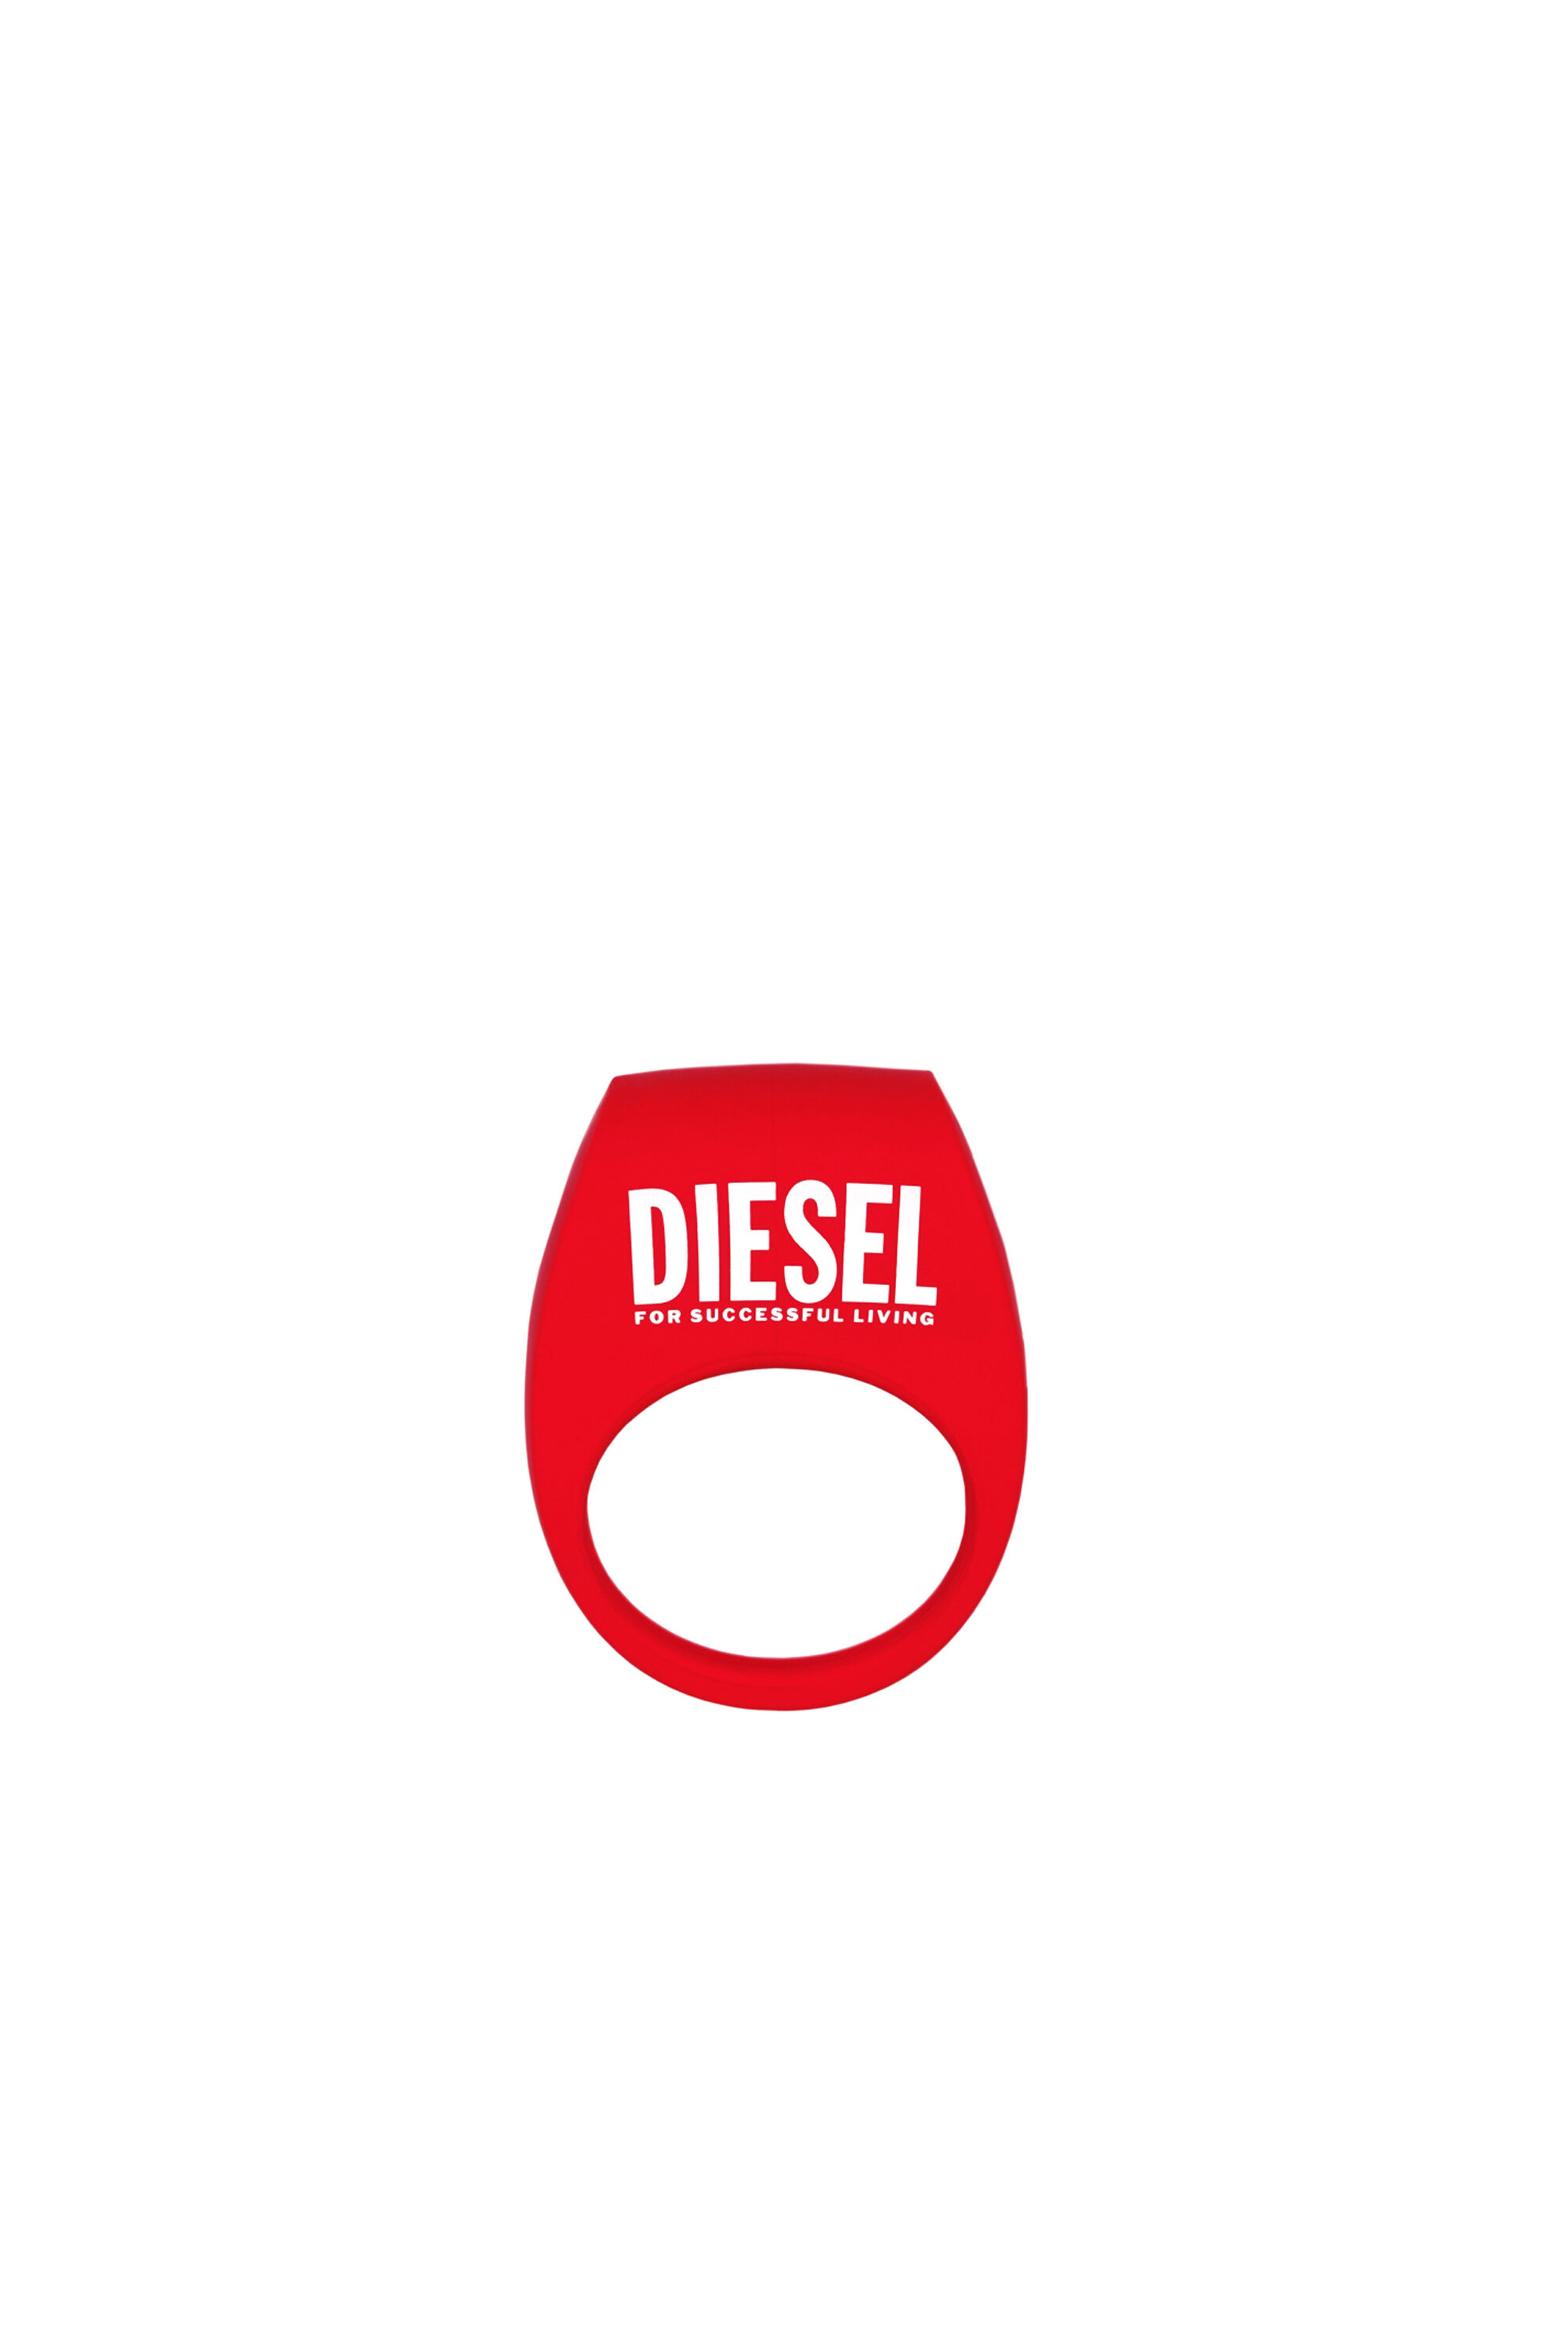 Diesel - 8694 TOR 2 X DIESEL, Red - Image 2